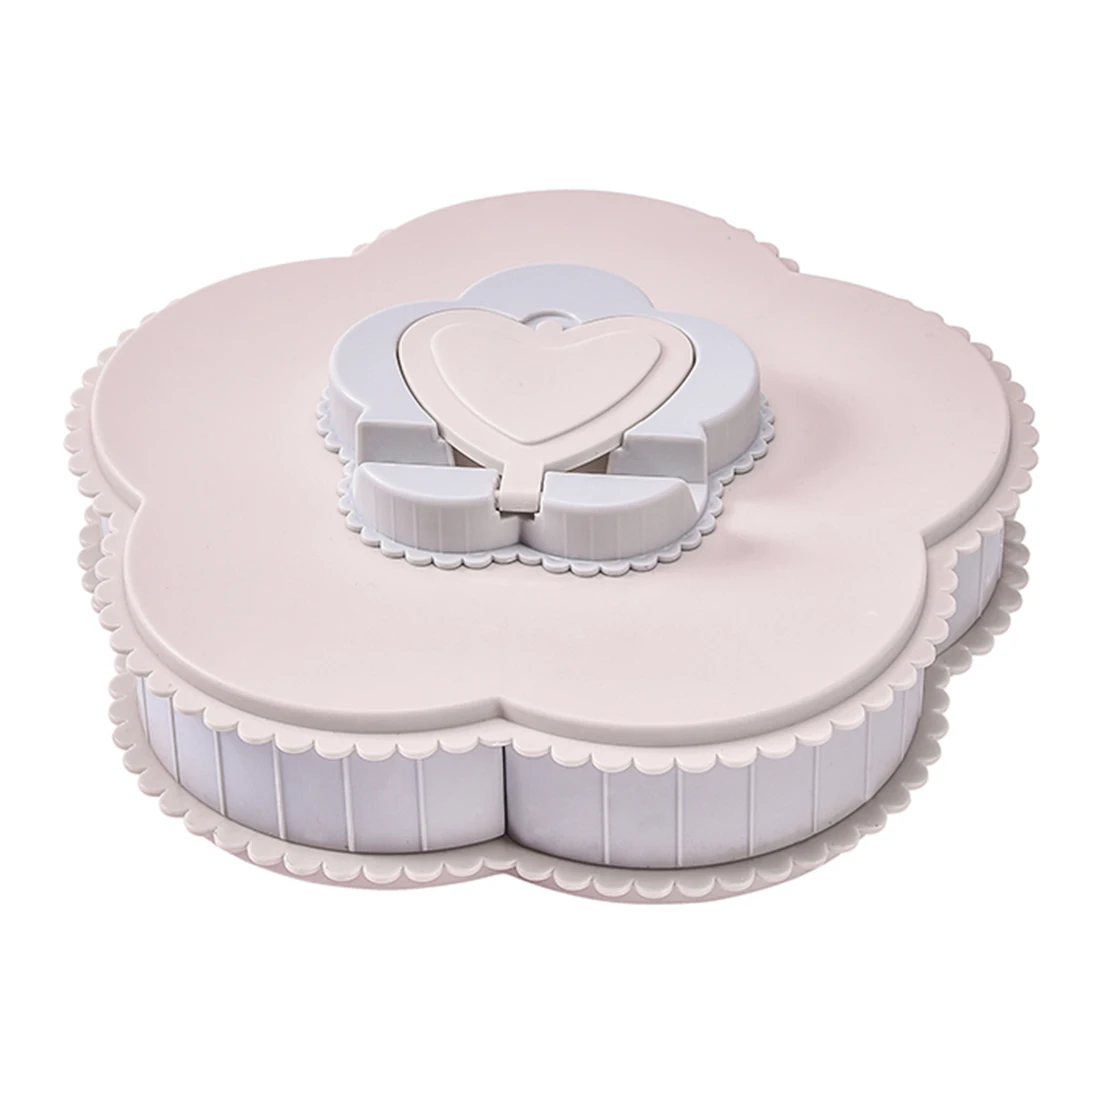 Новая Вращающаяся коробка для хранения конфет в форме лепестка цветка d тарелка для сухофруктов Орехи закуски десерт блюдо контейнер держатель для телефона - Цвет: Pink